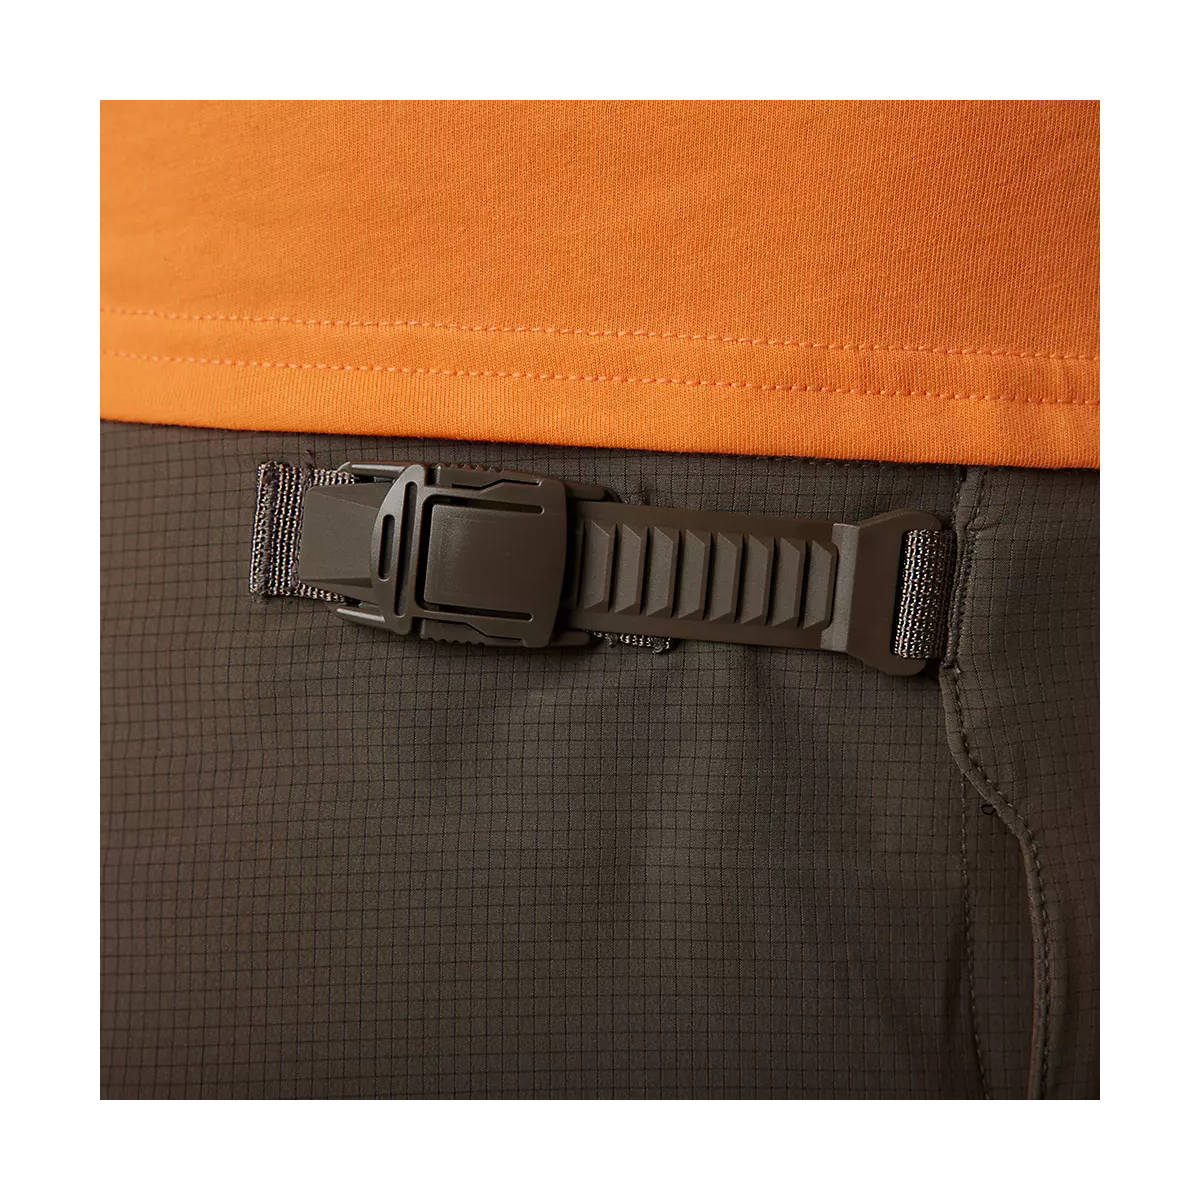 hebillad del Pantalón corto Fox Flexair Ascent en color negro con badana extraible de tallaje estrecho 30652-117